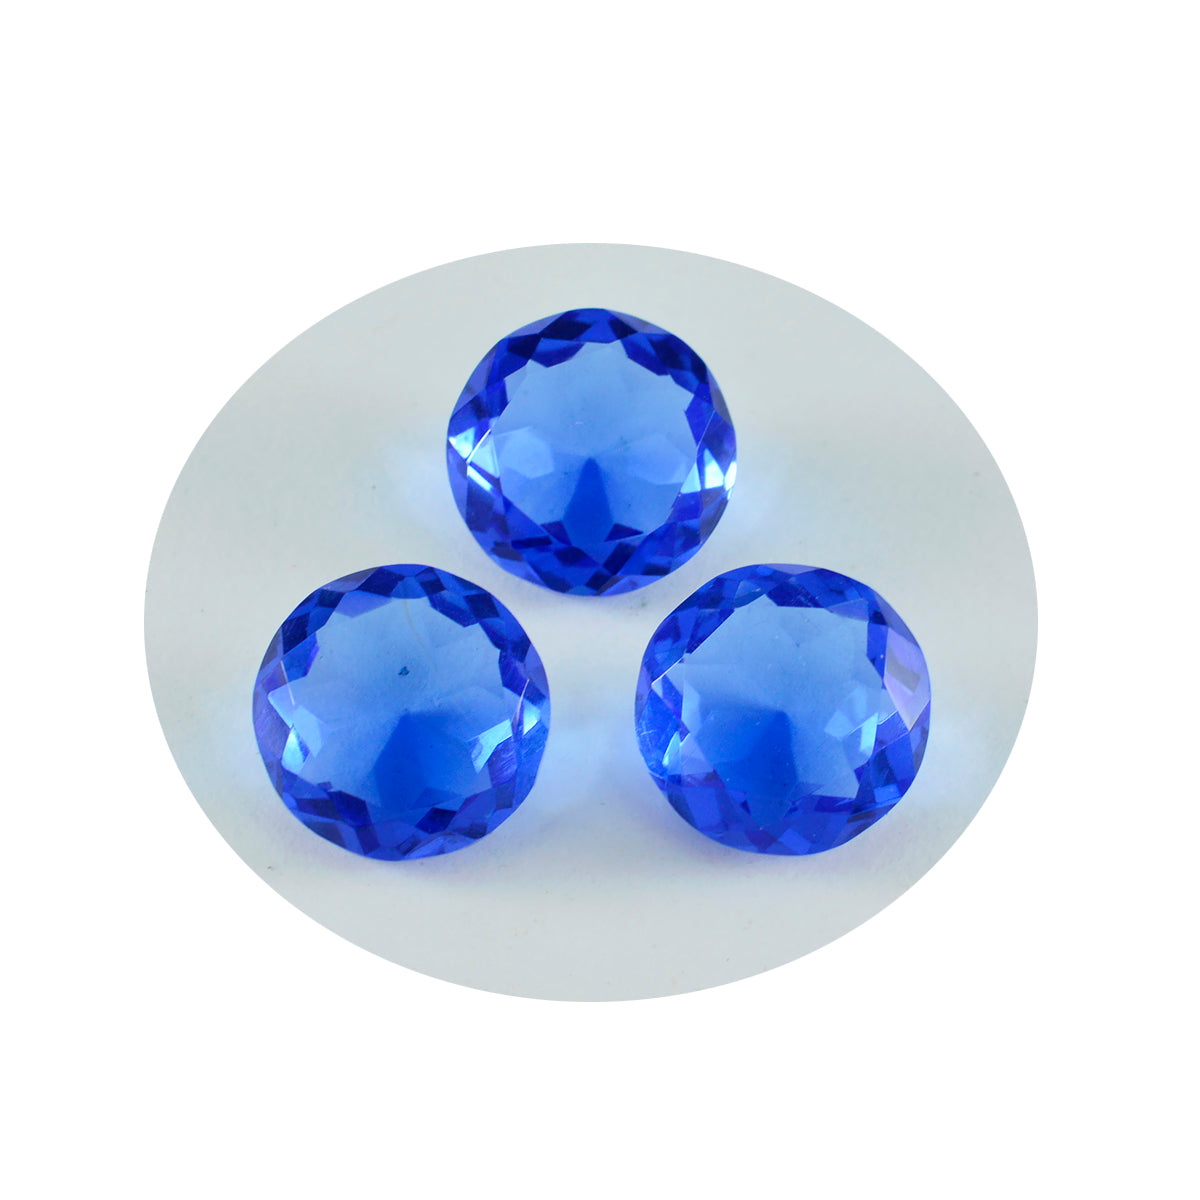 Riyogems 1 Stück blauer Saphir, CZ, facettiert, 14 x 14 mm, runde Form, Edelstein in AAA-Qualität